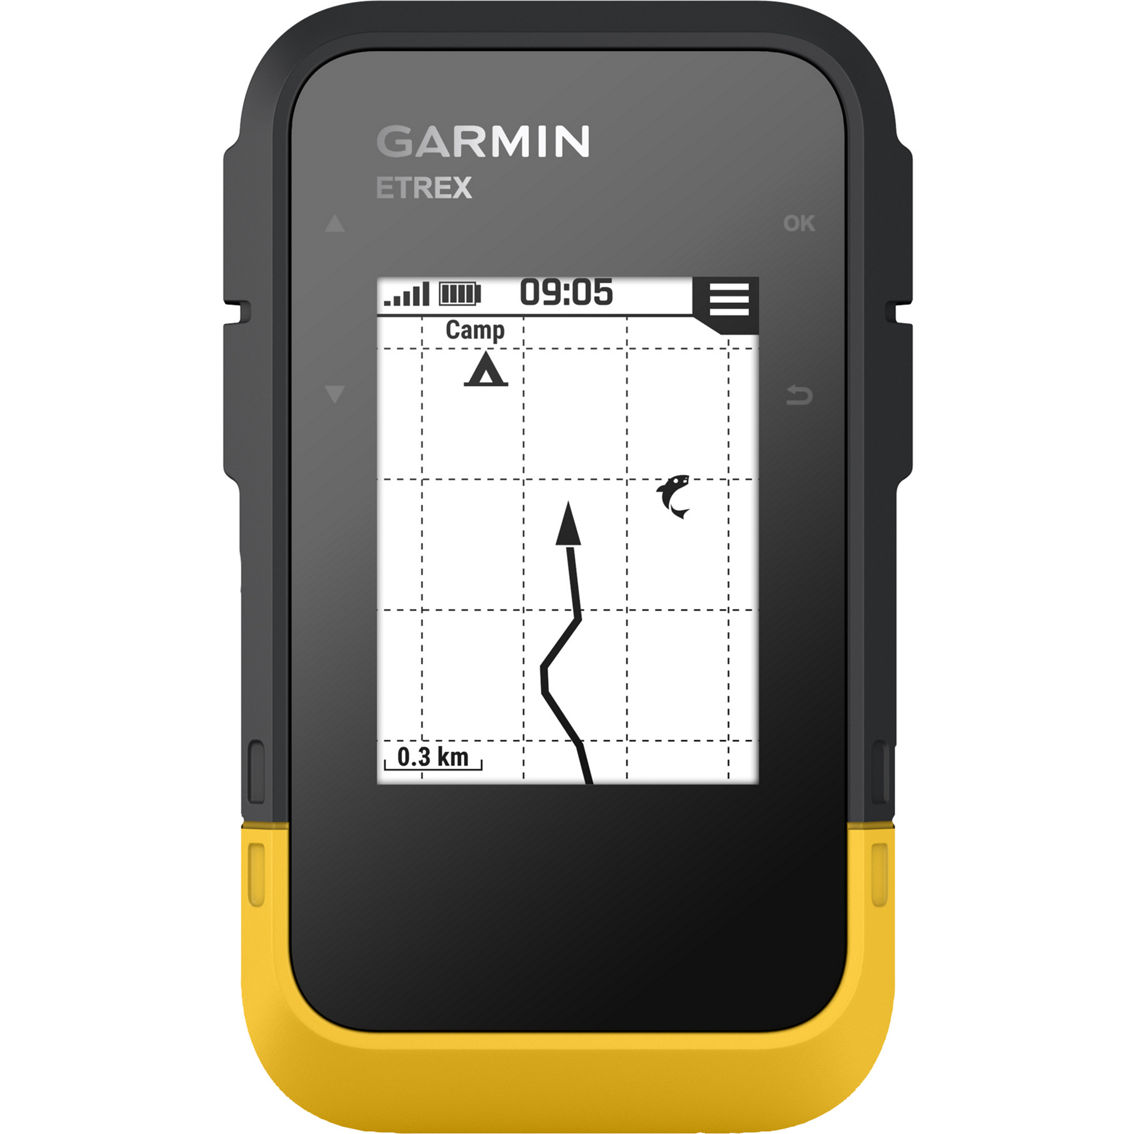 Garmin ETrex SE GPS Handheld Navigator - Image 8 of 8